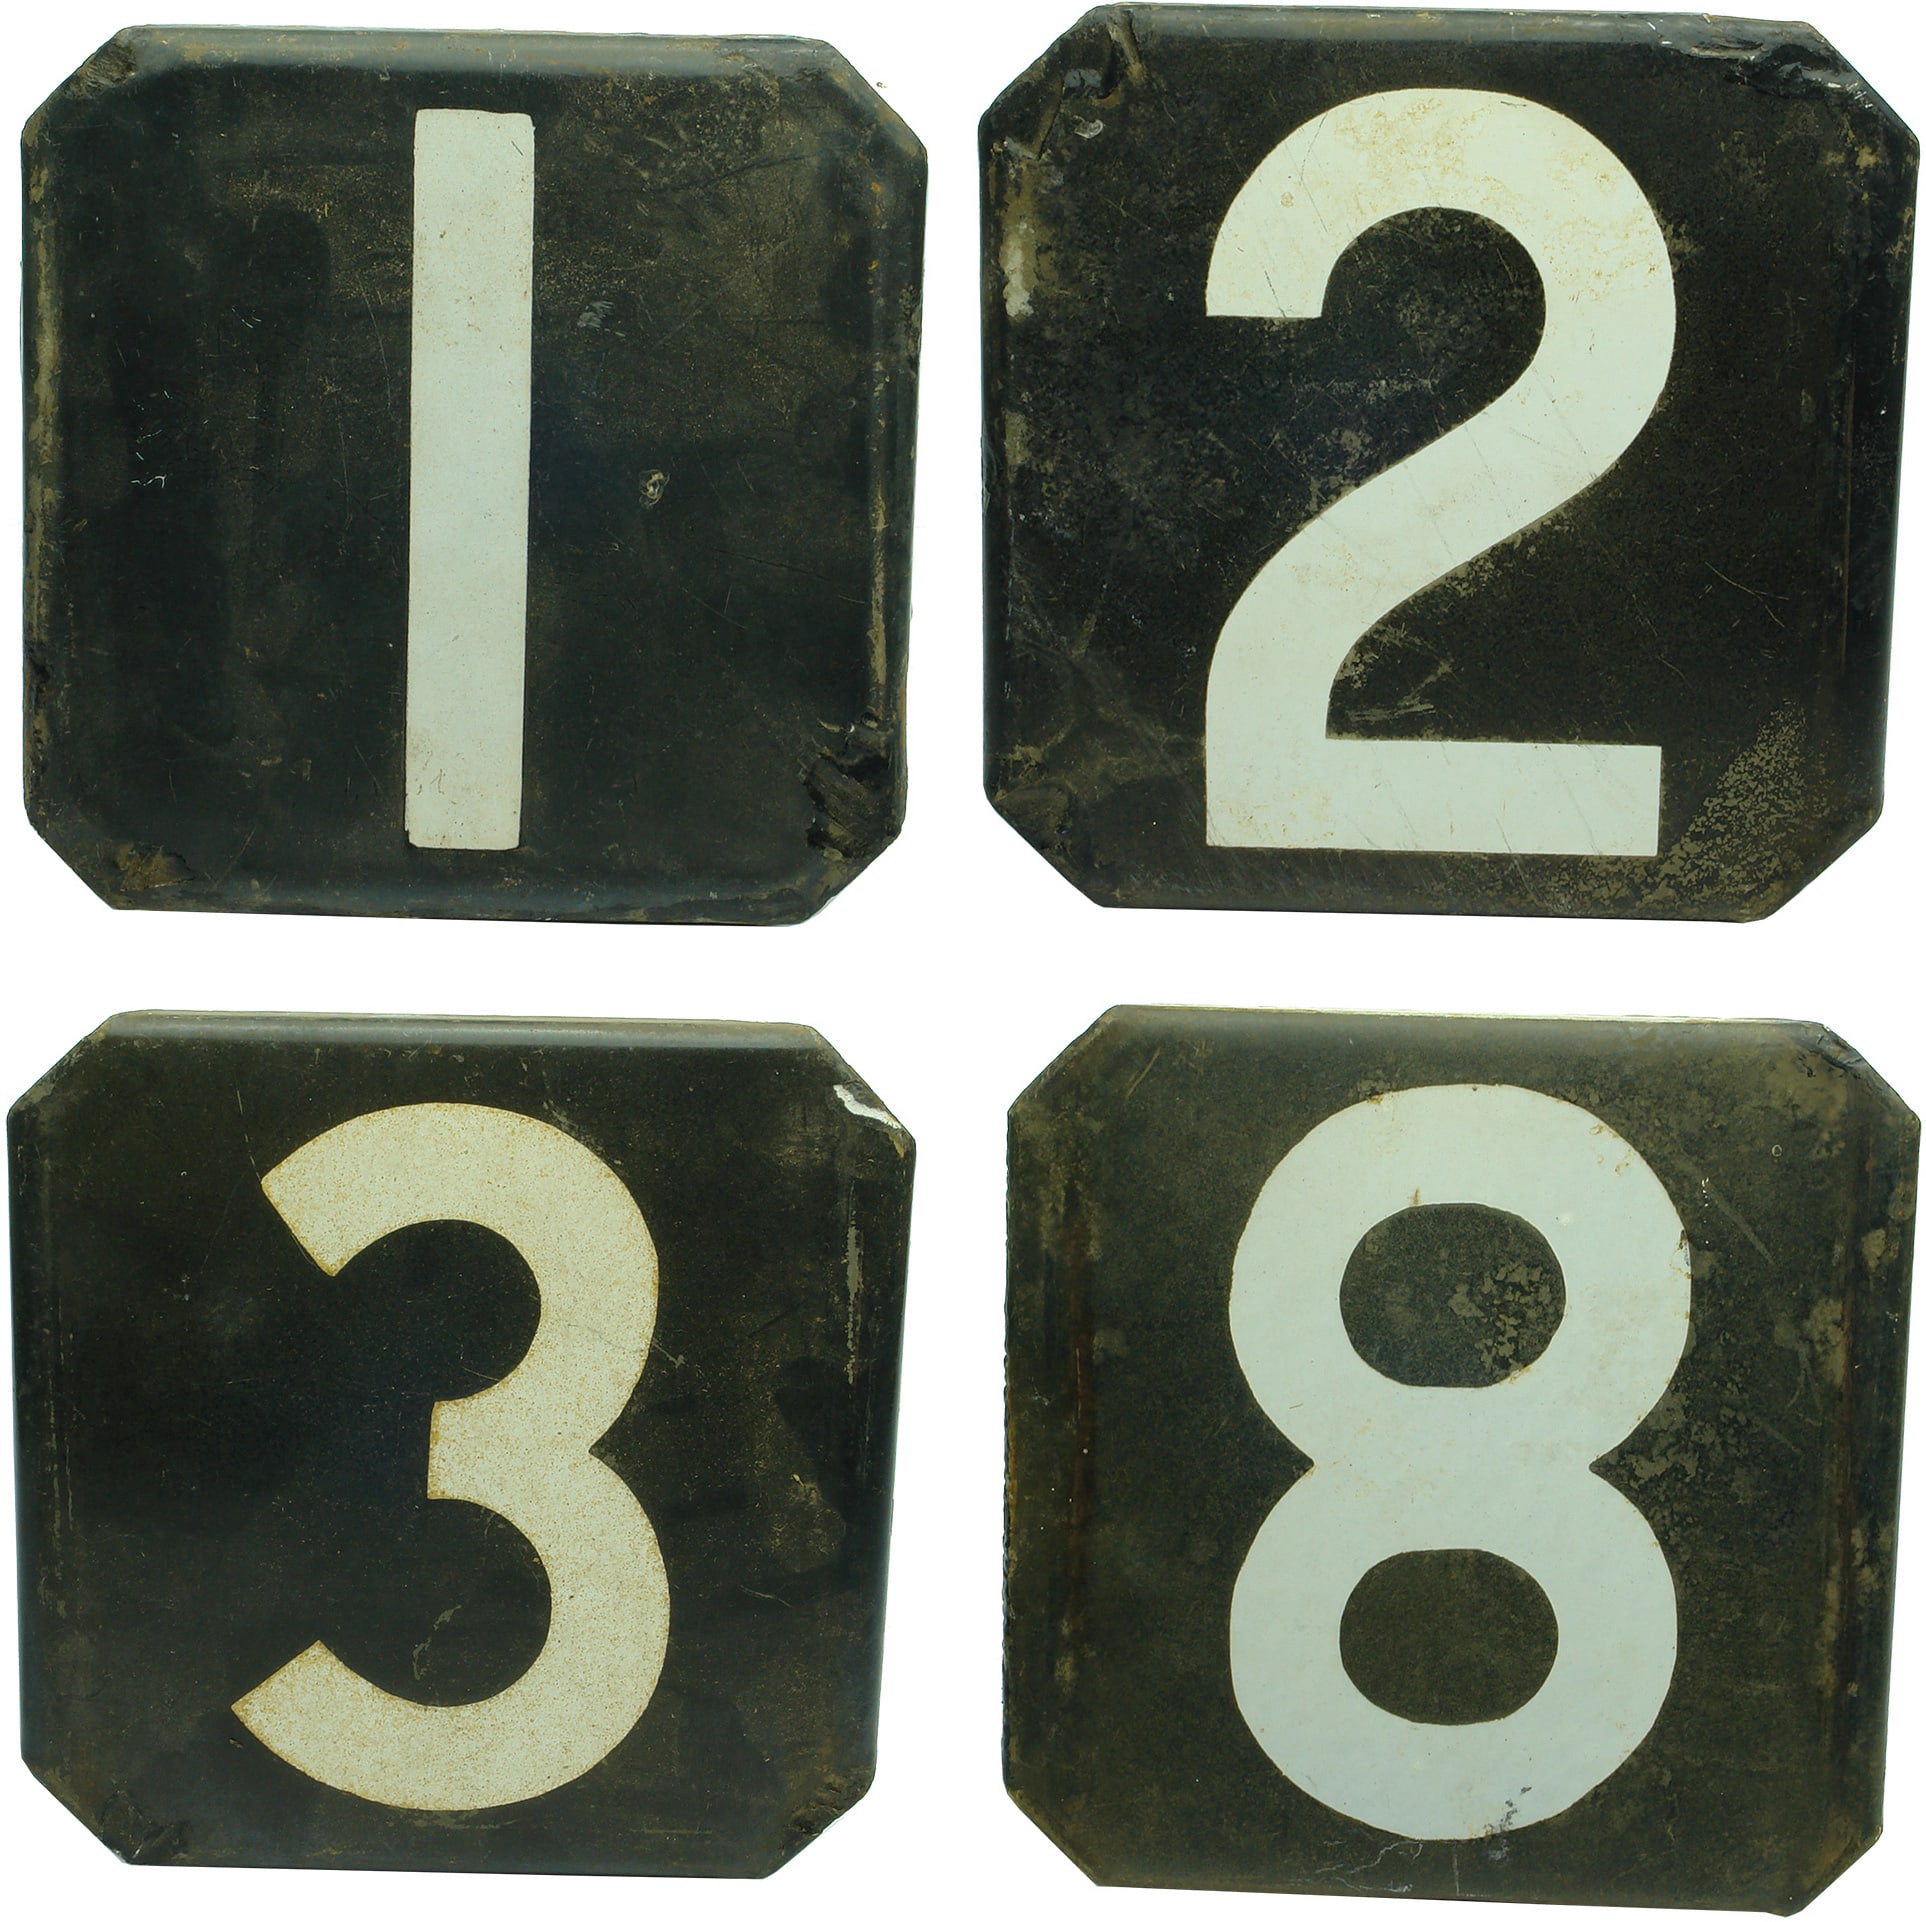 Enamel Railway Carriage numbers